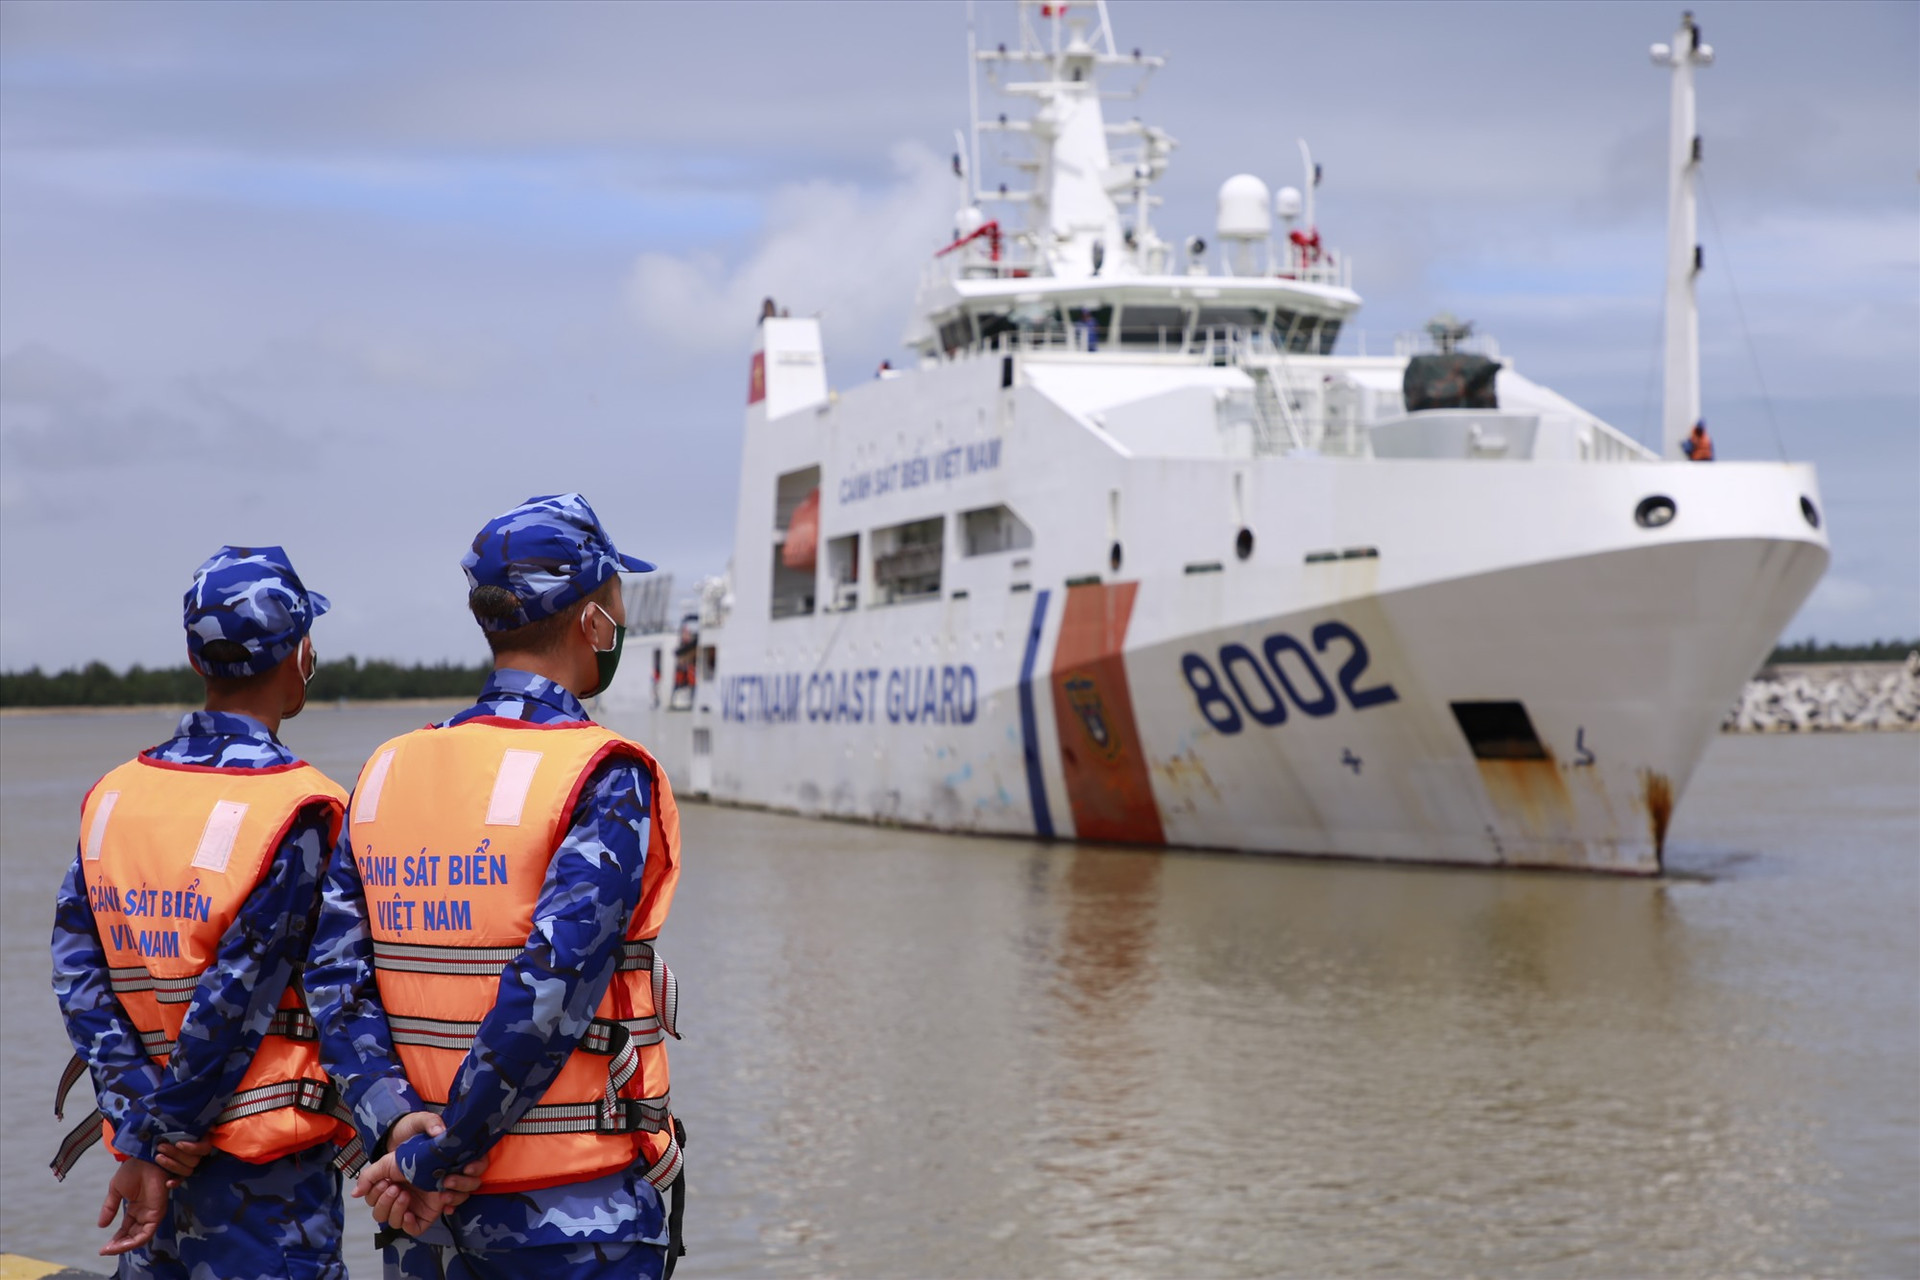 Tàu Cảnh sát biển 8002, tàu hiện đại nhất của Bộ Tư lệnh Vùng Cảnh sát biển 2 lên đường cứu nạn từ hôm qua và đã tiếp cận, chăm sóc y tế cho các ngư dân được cứu vớt. Ảnh: T.C